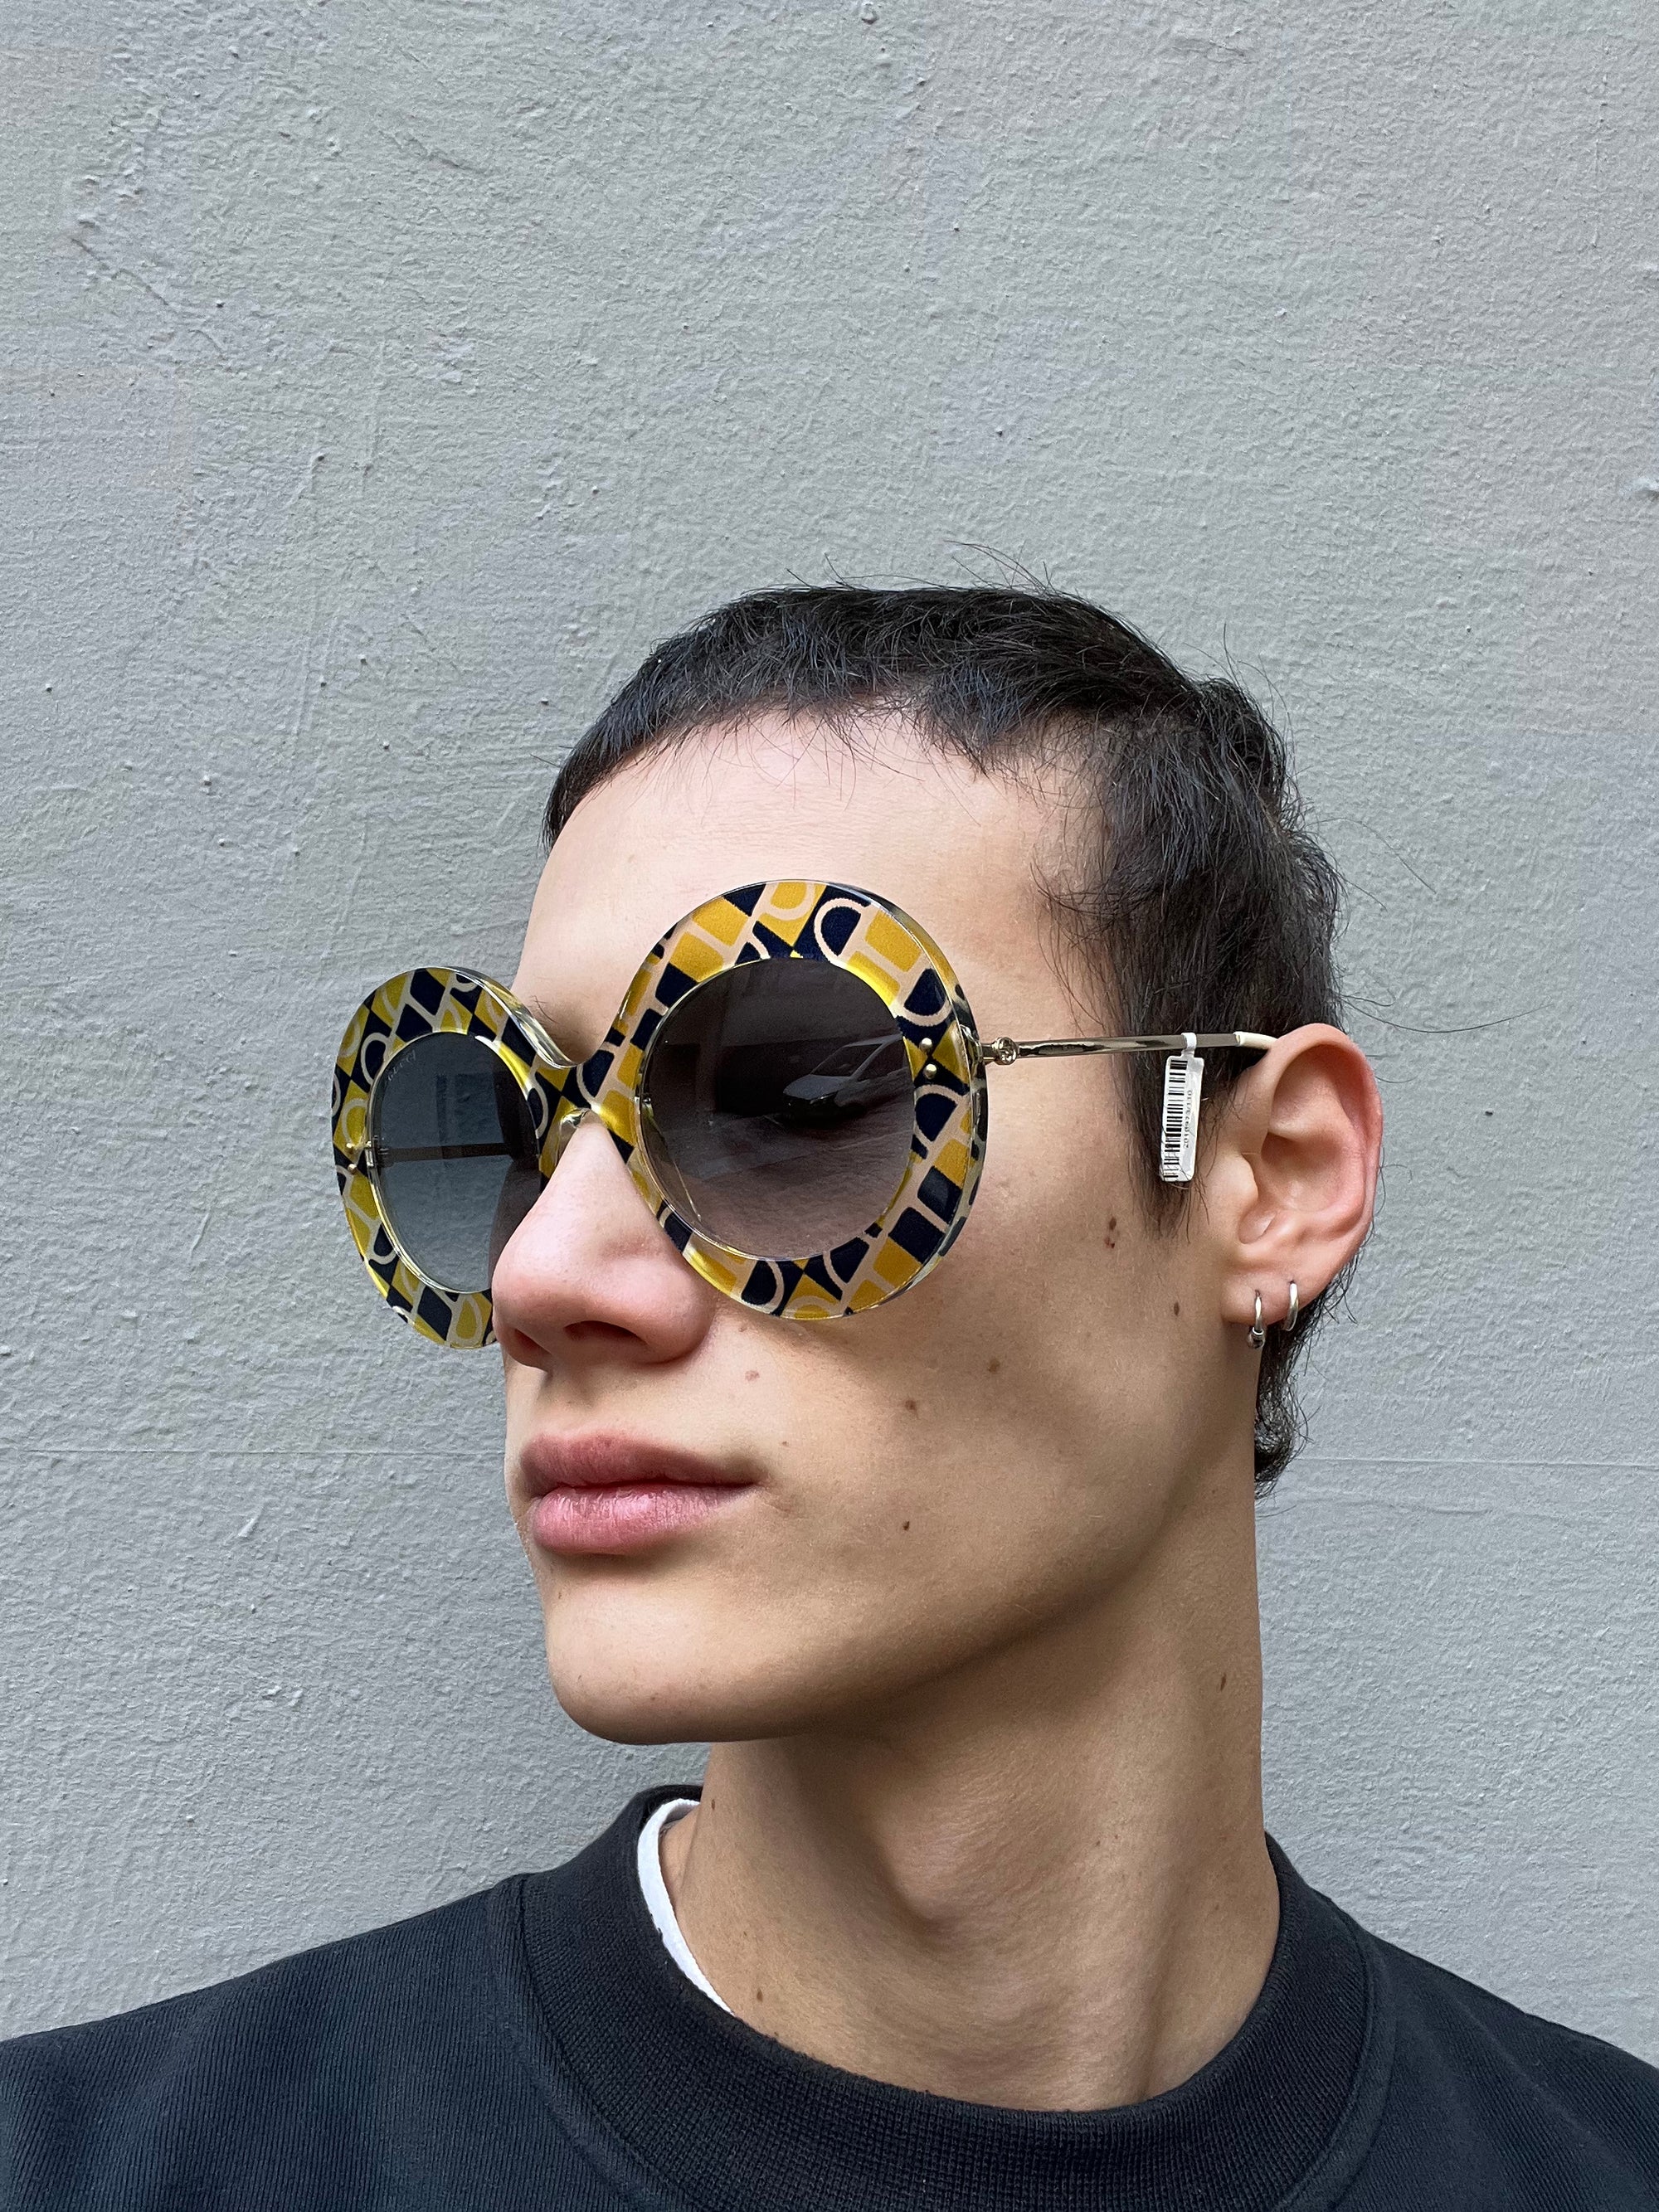 Tragebild der Gucci Sunglasses von der seite an einem Männlichem Model.